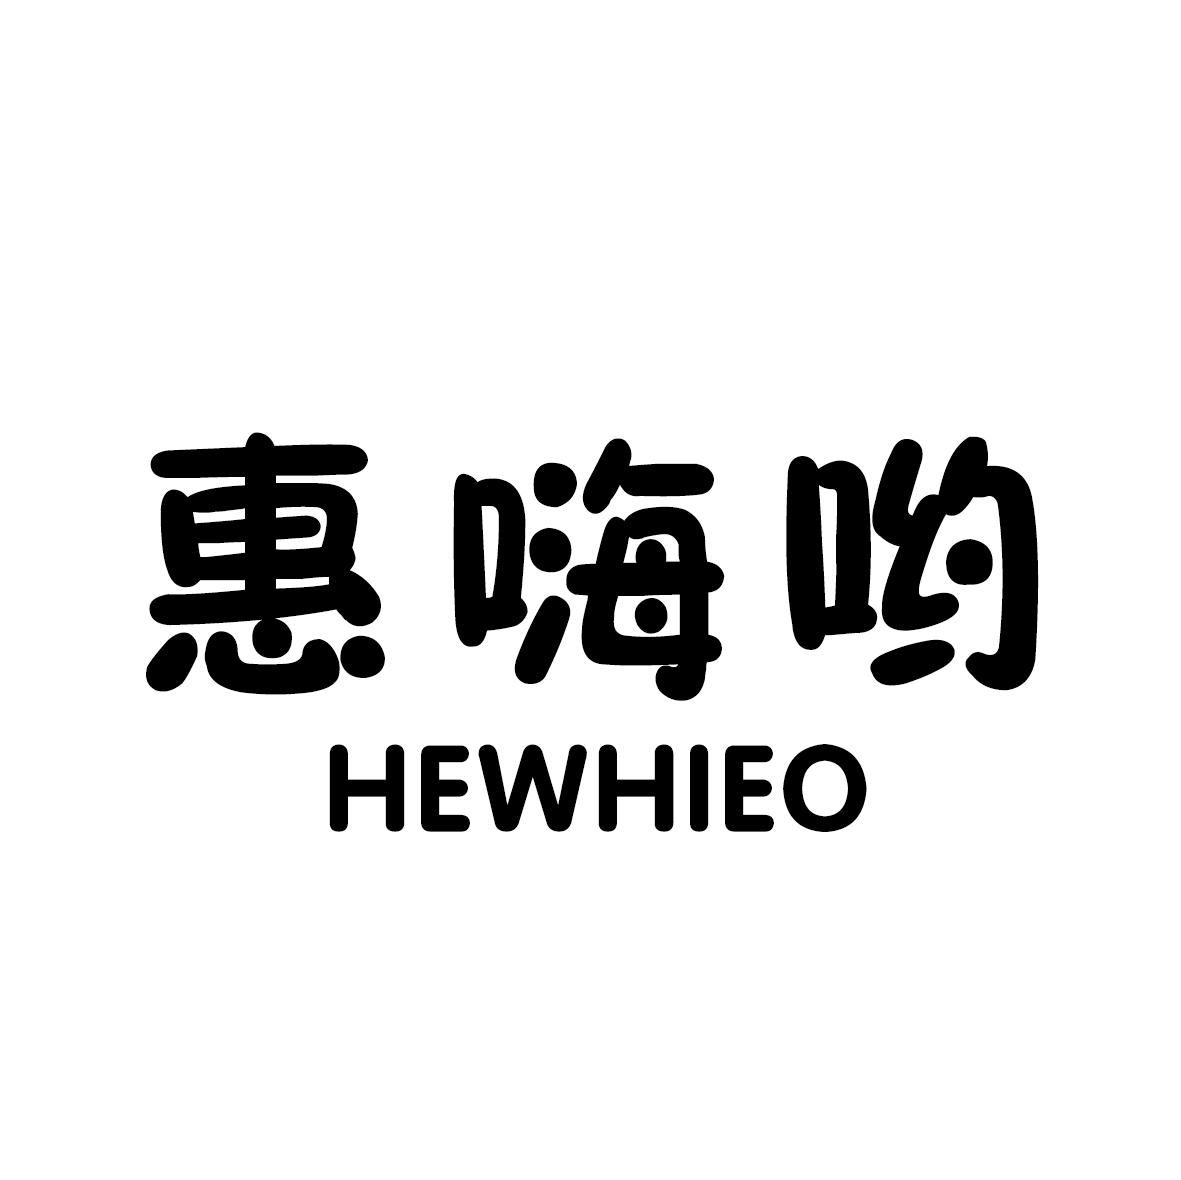 25类-服装鞋帽惠嗨哟 HEWHIEO商标转让